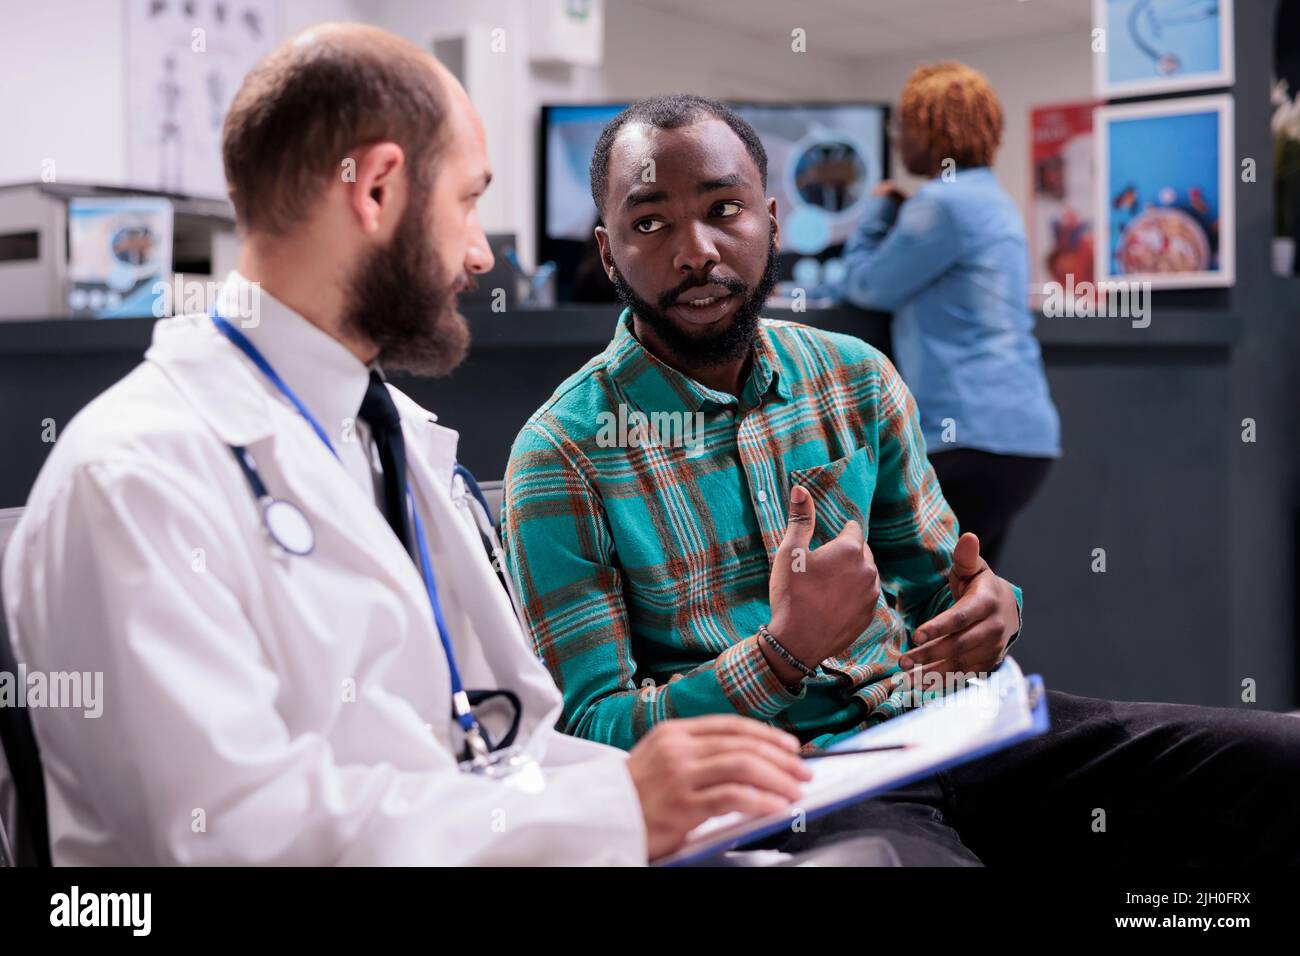 Hausarzt im Wartezimmer, der mit einem männlichen Patienten spricht und einen medizinischen Kontrollbericht zur Diagnose und Behandlung der Krankheit verwendet. Arzt und Mann, die Gesundheitsberatung durchführen. Stockfoto